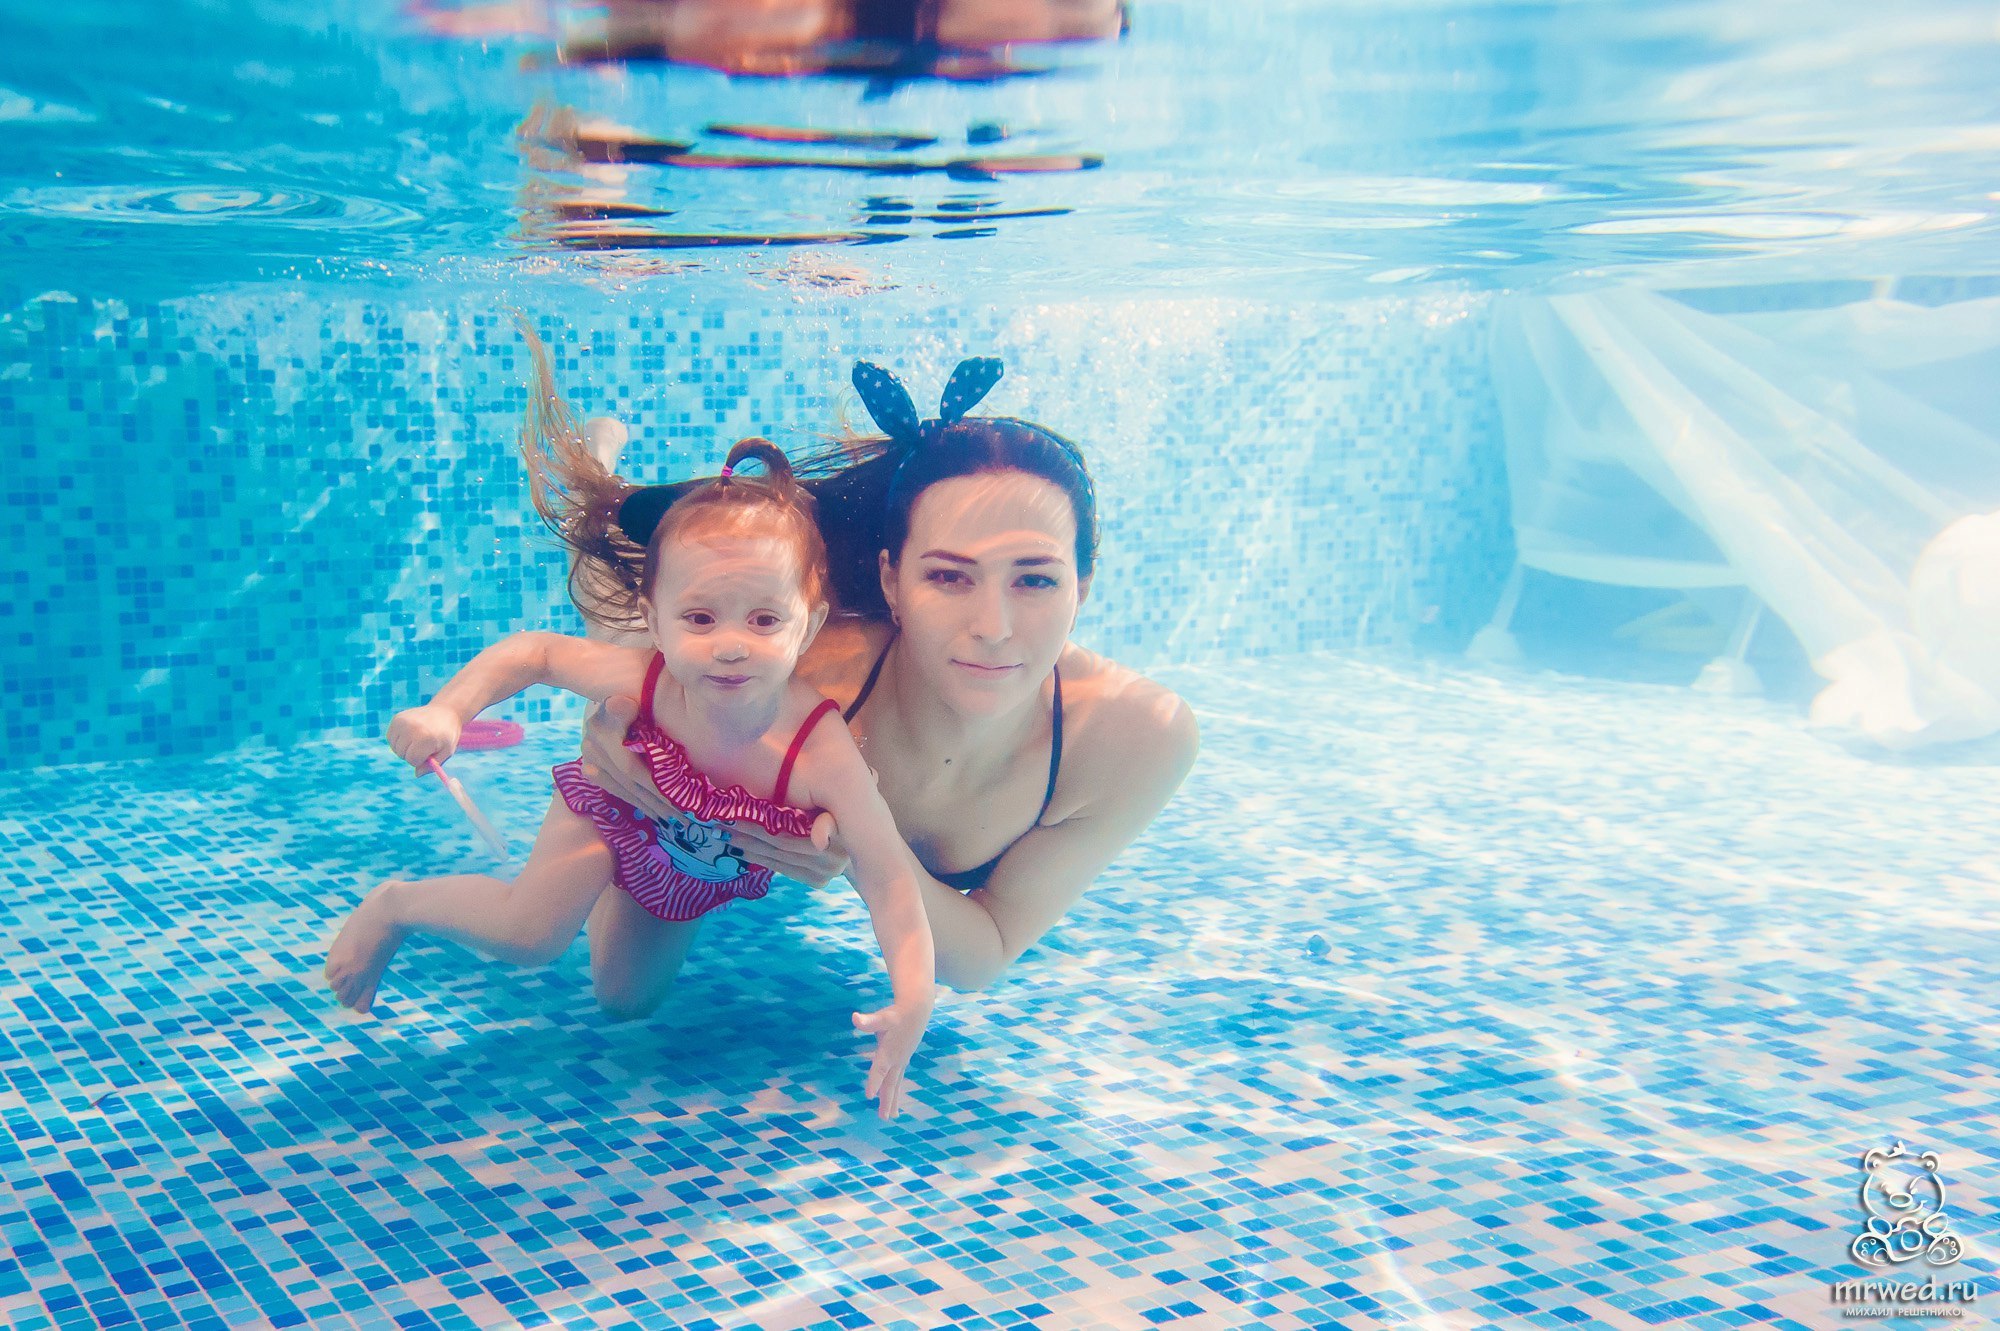 Мама друг бассейн. Дети в бассейне. Ребенок под водой. Идеи для фотосессии в бассейне для детей.